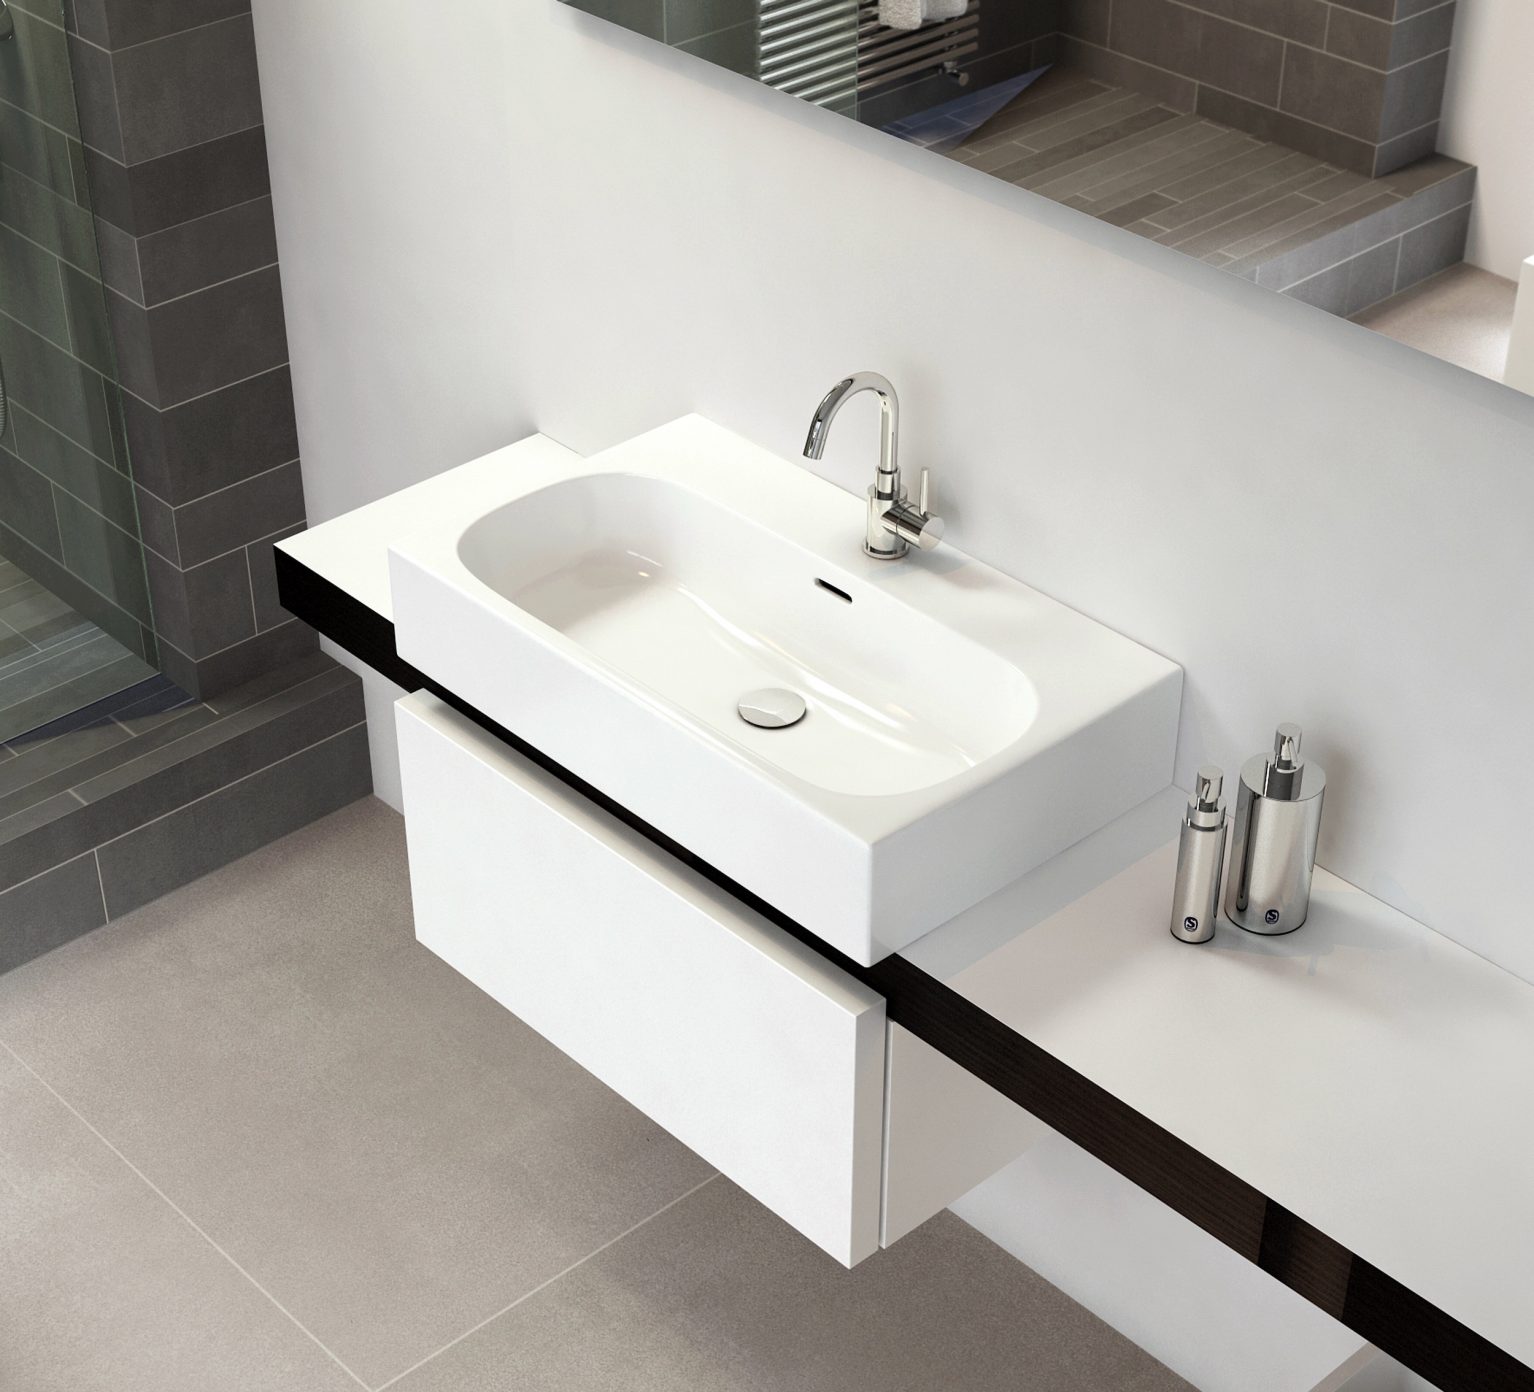 fontein-wastafel-wit-keramiek-toilet-badkamer-luxe-sanitair-First-MatchMe-clou-CL0201051-met-drie-voorbewerkte-kraangaten-CL020105101-70-cm-met-kraangat-zeepdispenser-planchet